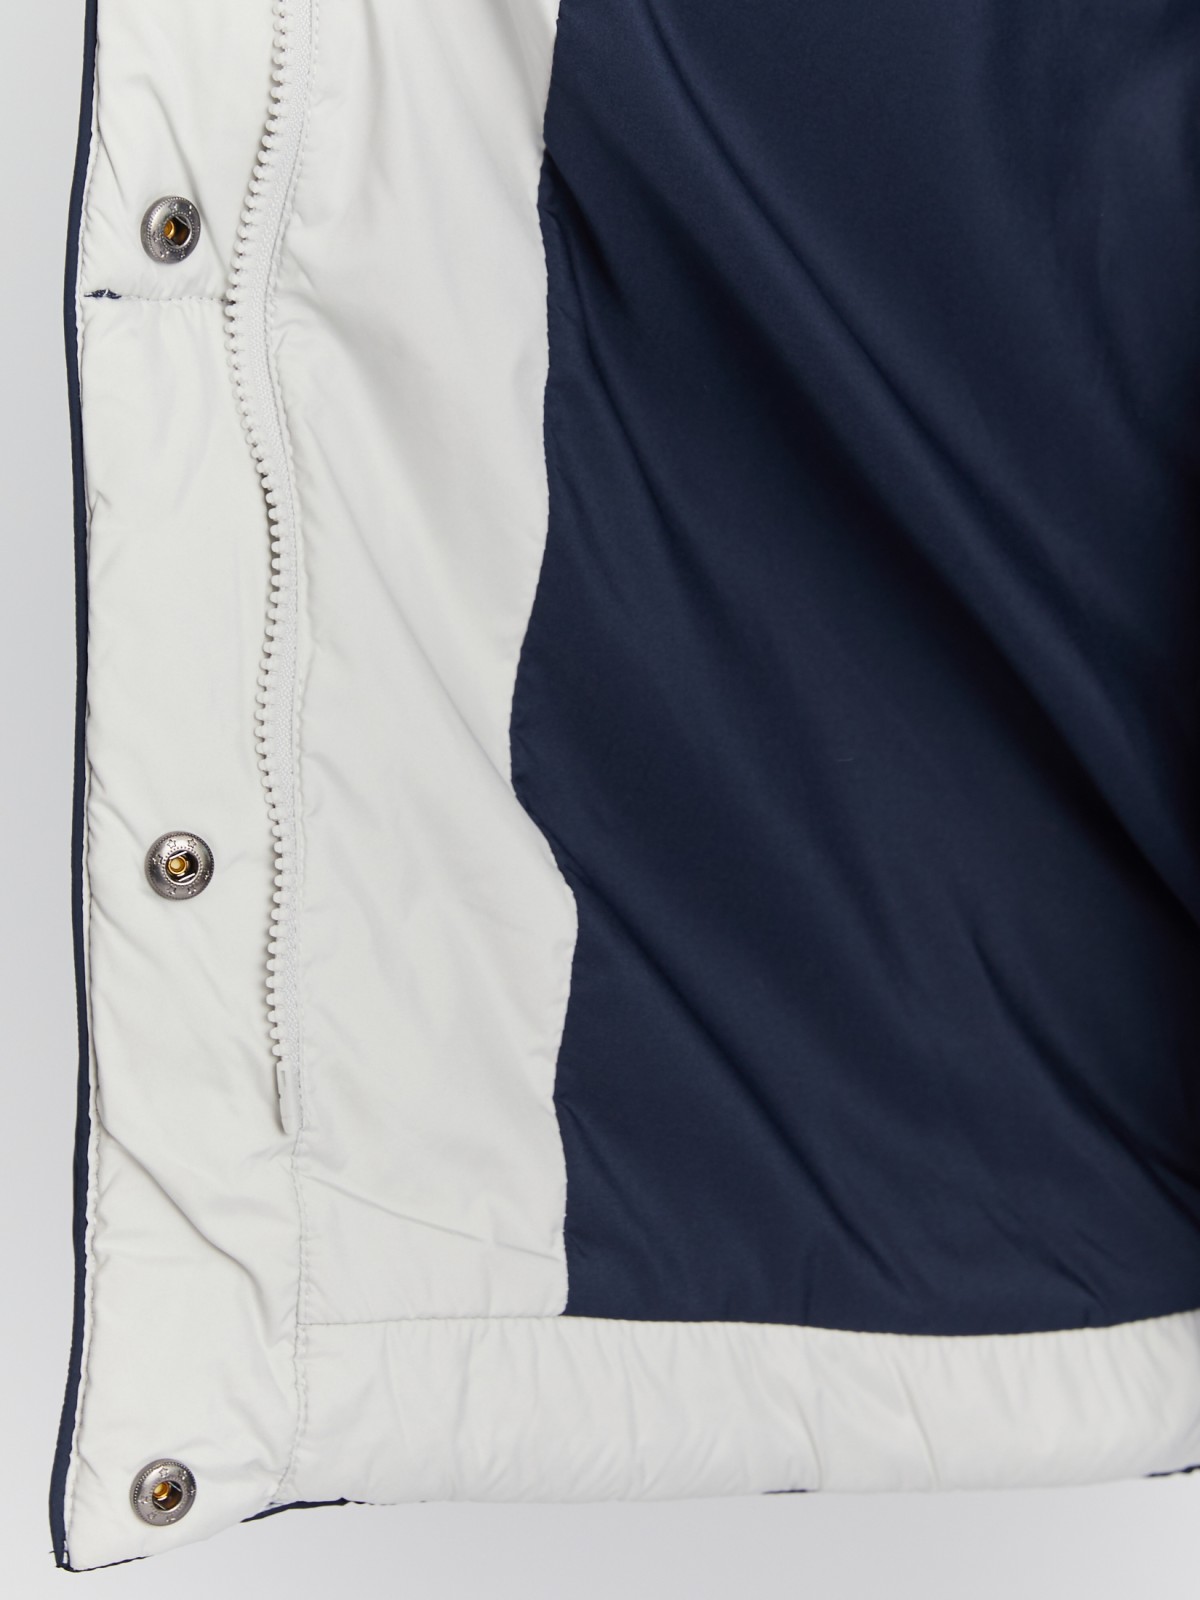 Тёплая стёганая куртка-пальто на молнии с акцентным капюшоном zolla 023345212024, цвет синий, размер S - фото 5